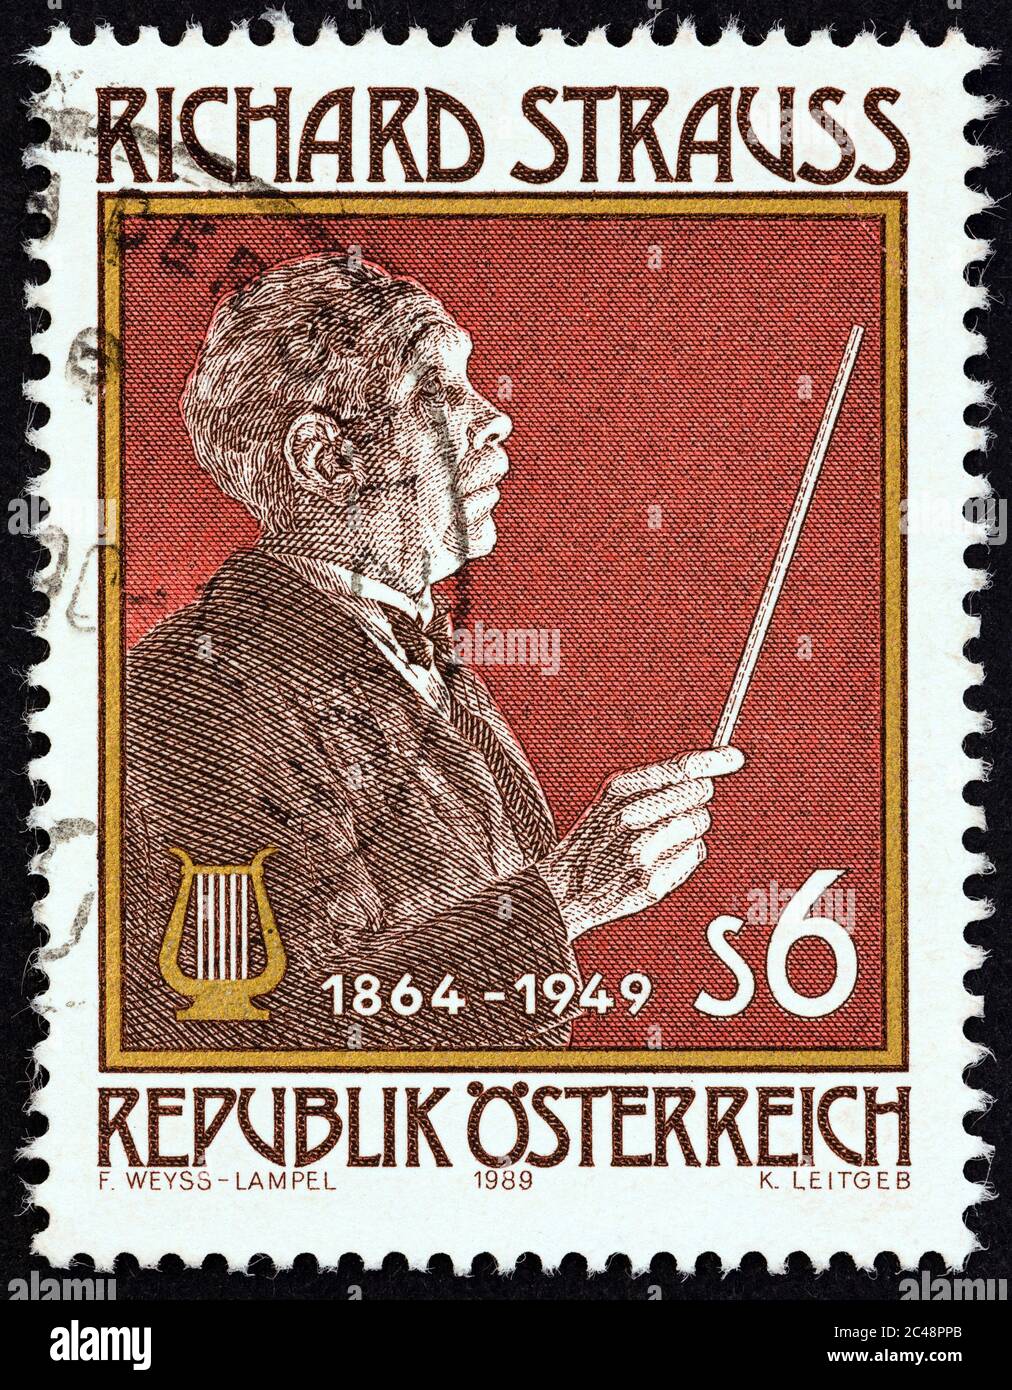 ÖSTERREICH - UM 1989: Eine in Österreich gedruckte Briefmarke zum 125. Geburtstag von Richard Strauss zeigt Richard Strauss (Komponist) Stockfoto